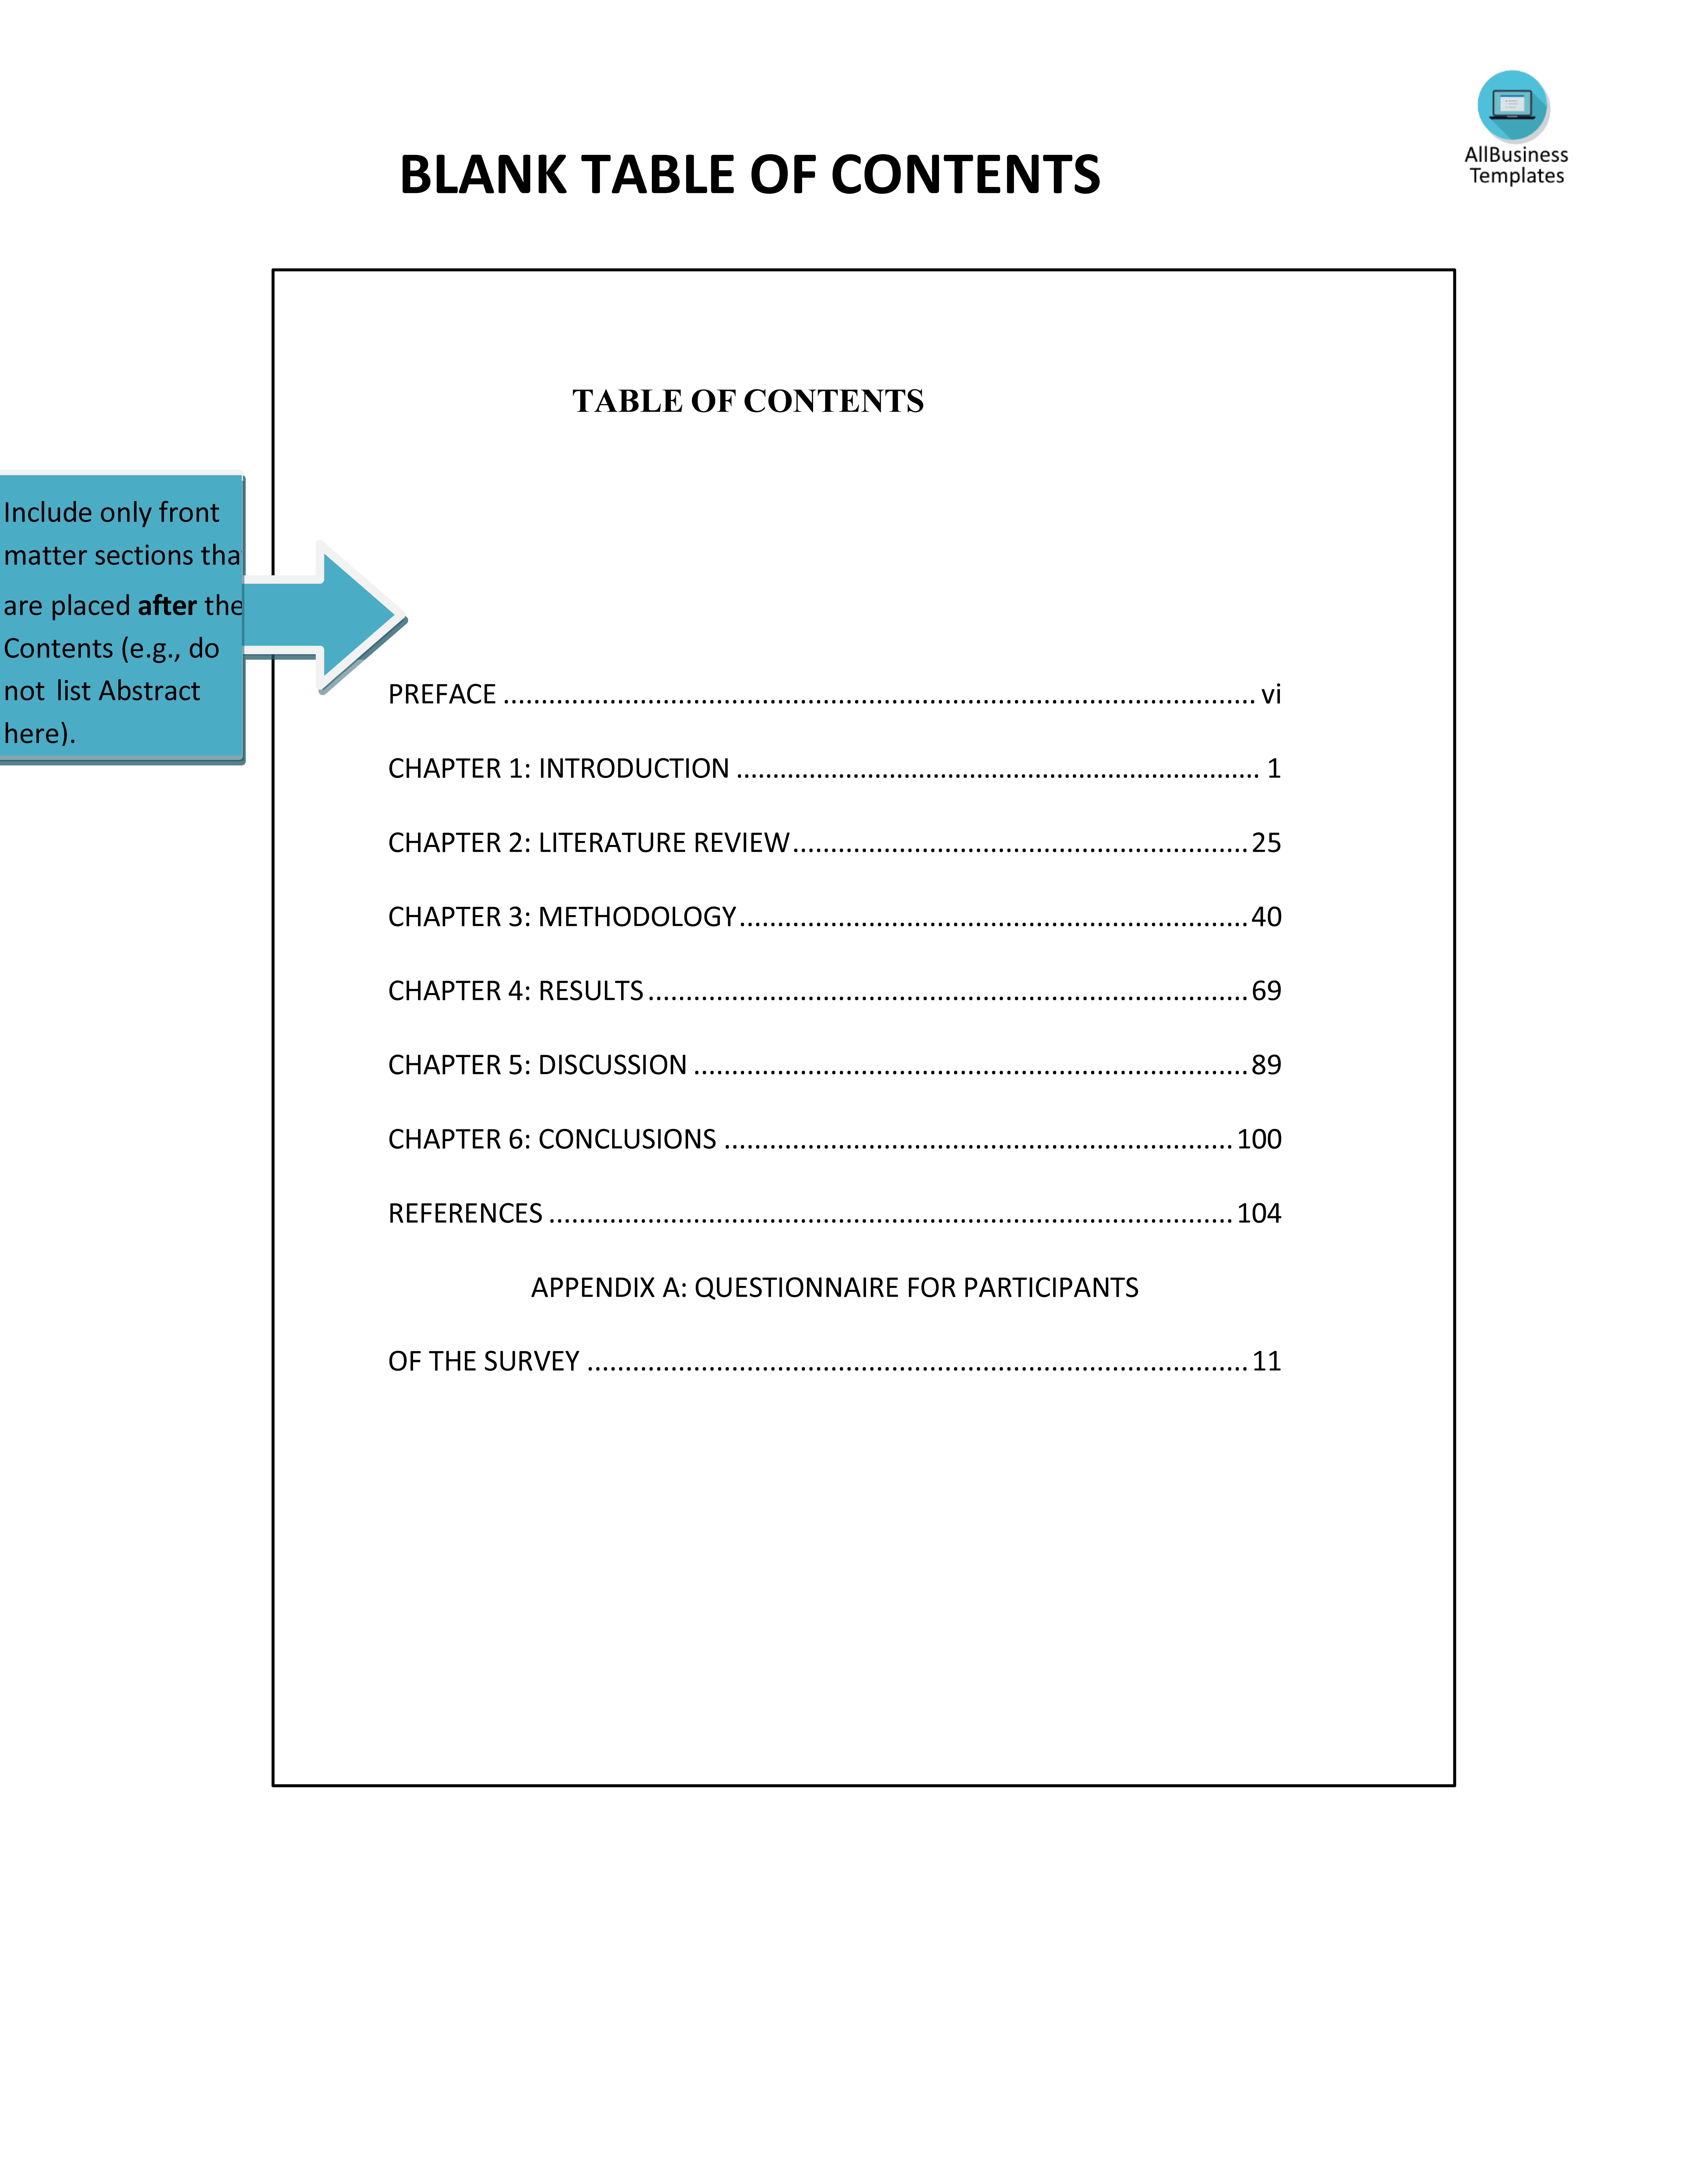 blank table of contents template plantilla imagen principal